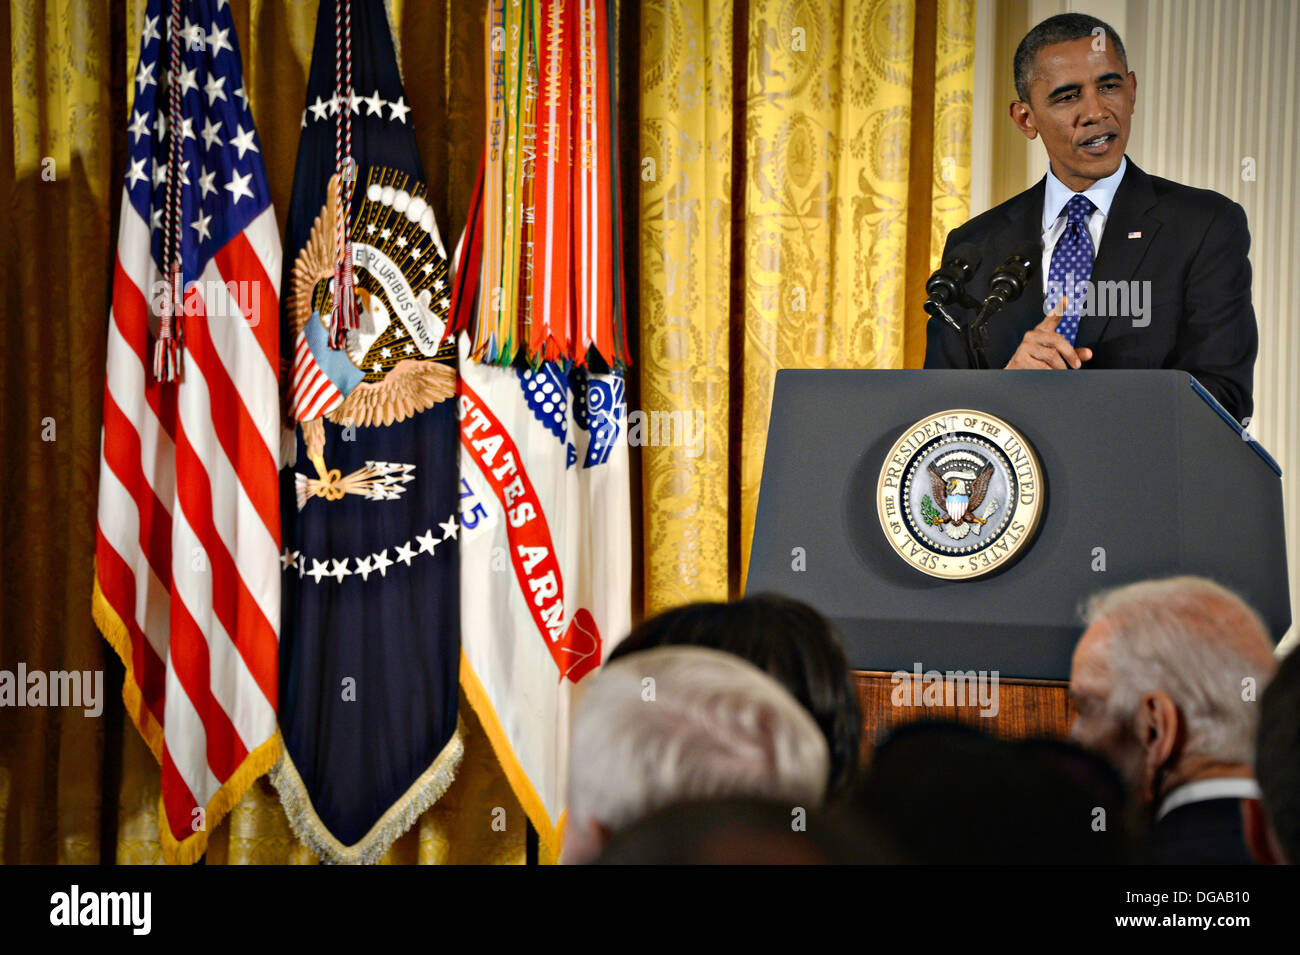 US-Präsident Barack Obama während der Medal Of Honor-Zeremonie für Army Captain William D. Swenson im East Room des weißen Hauses 15. Oktober 2013 in Washington, DC spricht. Die Medal Of Honor ist die höchste militärische Auszeichnung des Landes. Stockfoto